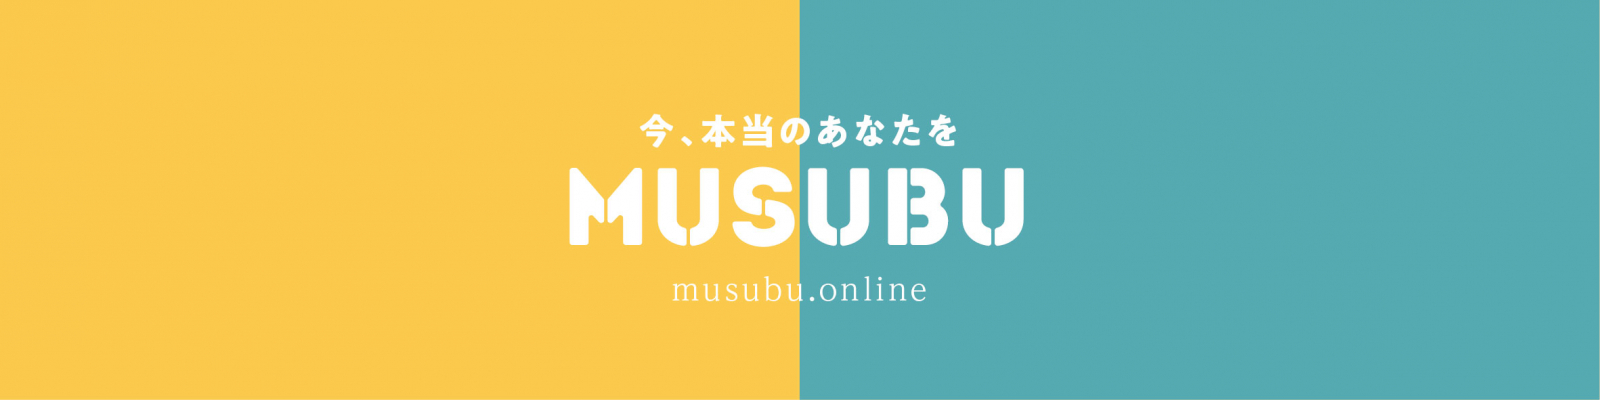 不動産SHOPナカジツ 人材紹介事業に着手 『MUSUBU』設立